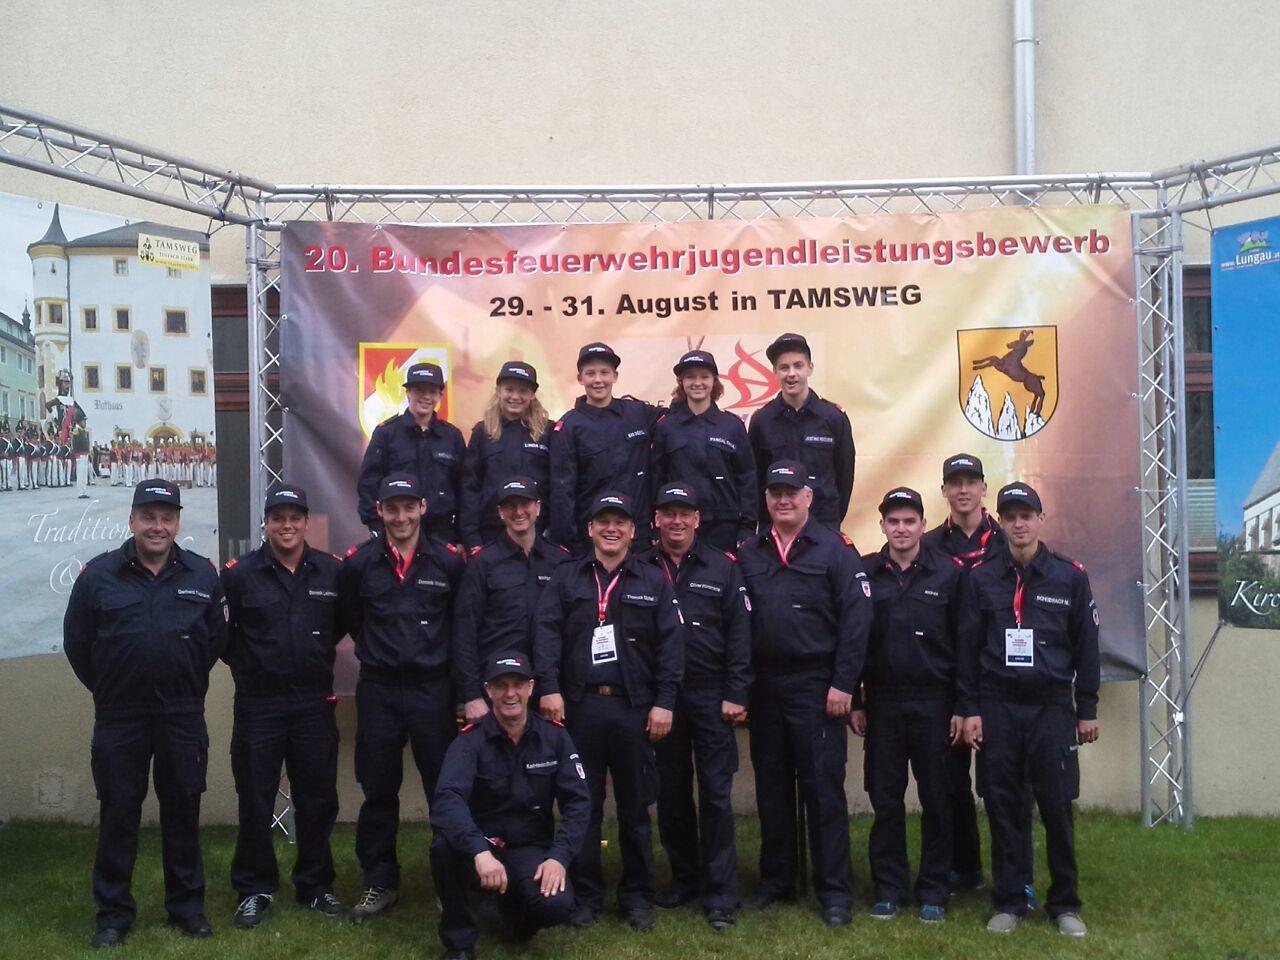 Feuerwehrjugend Gisingen bei den Bundesfeuerwehrjugendleistungsbewerben in Salzburg.